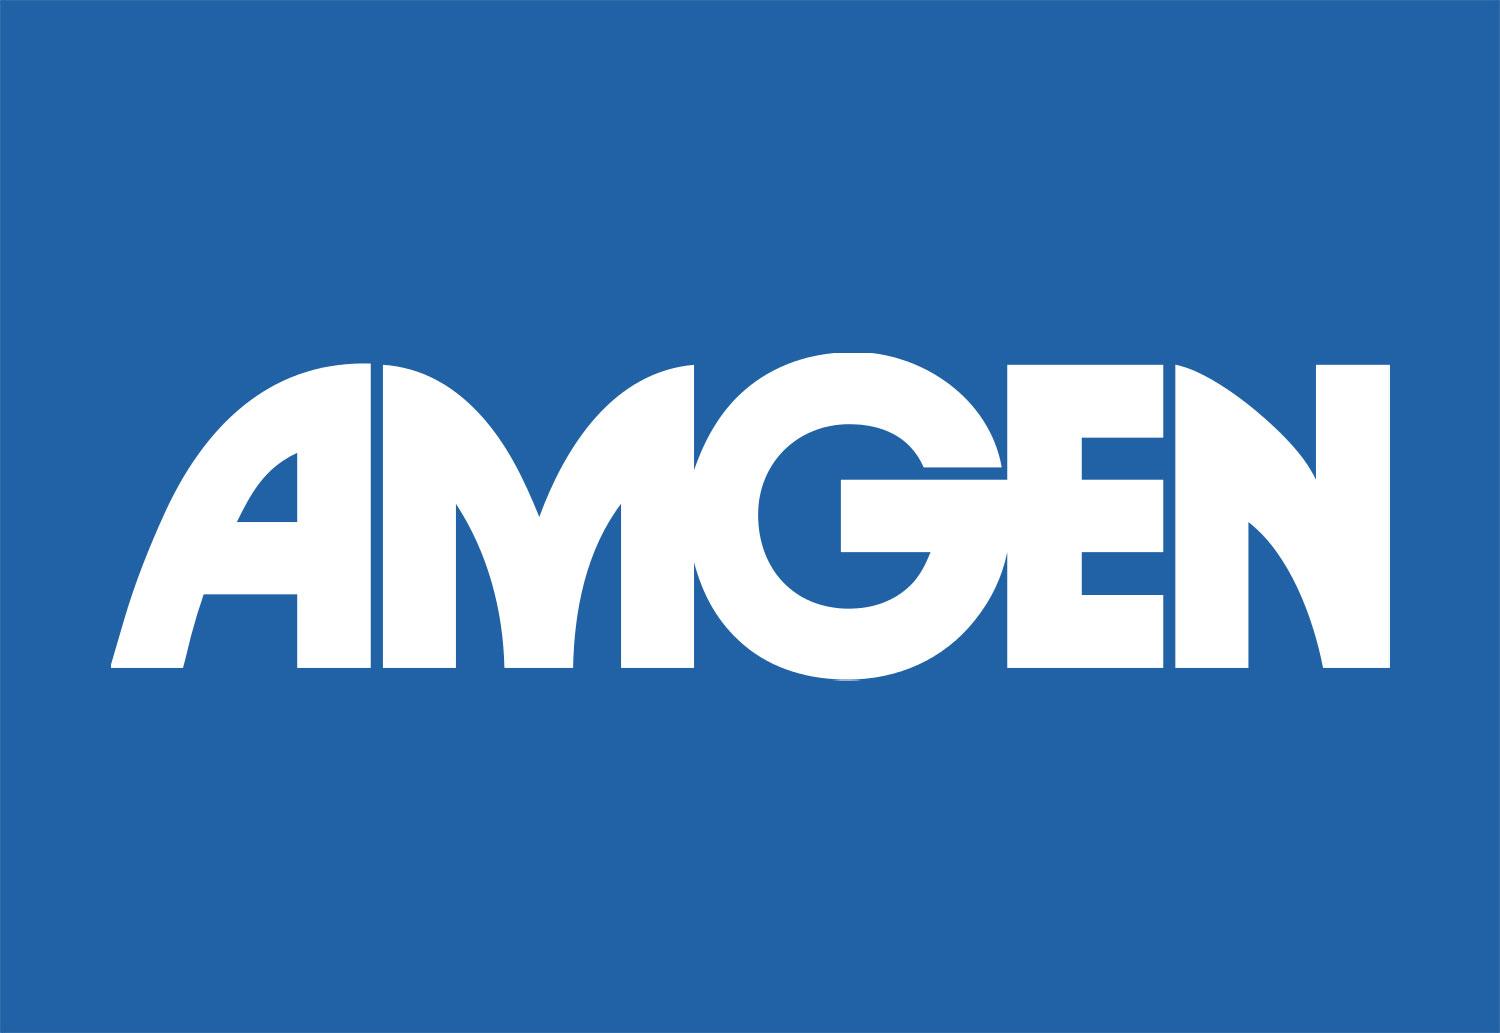 AMGN image